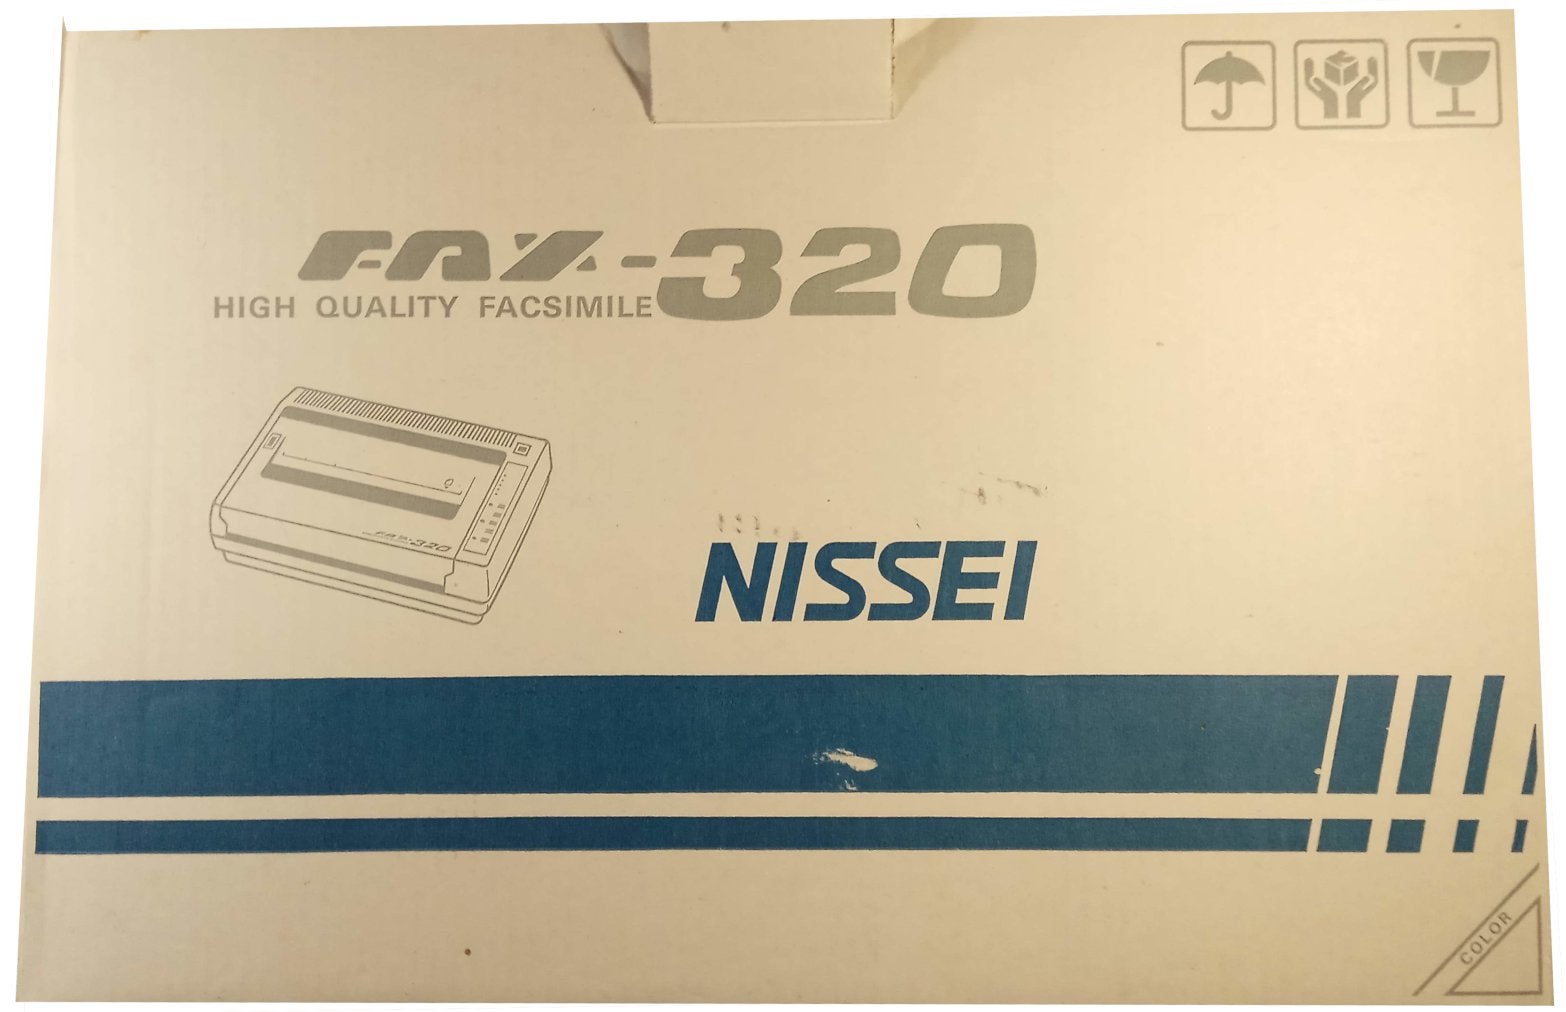 NISSEI FAX-320